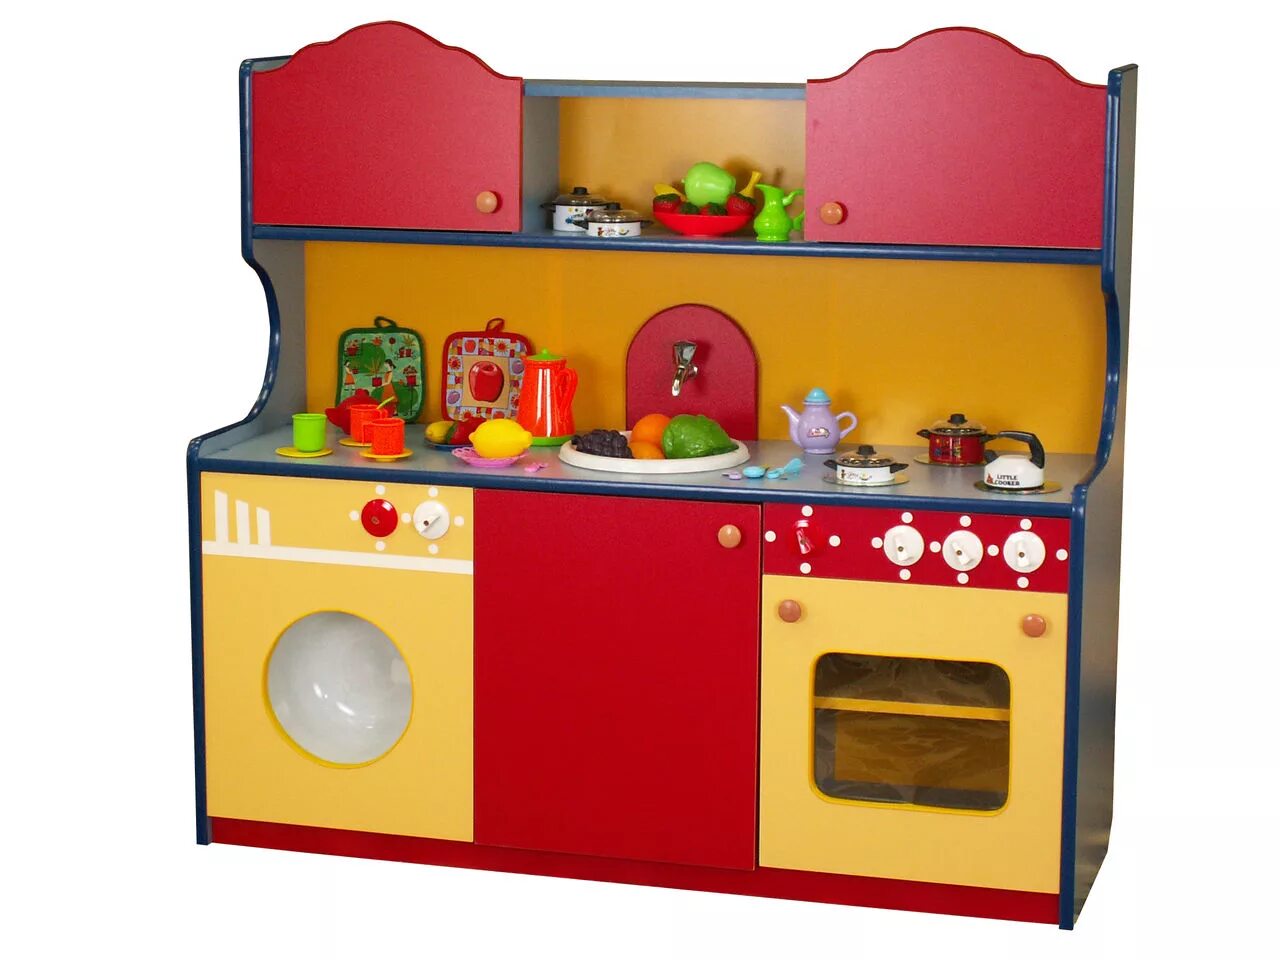 Сайт детской мебели для детских садов. Игровой модуль кухонька для детского сада. Игровая кухня для детского сада. Детская кухня для детского сада.